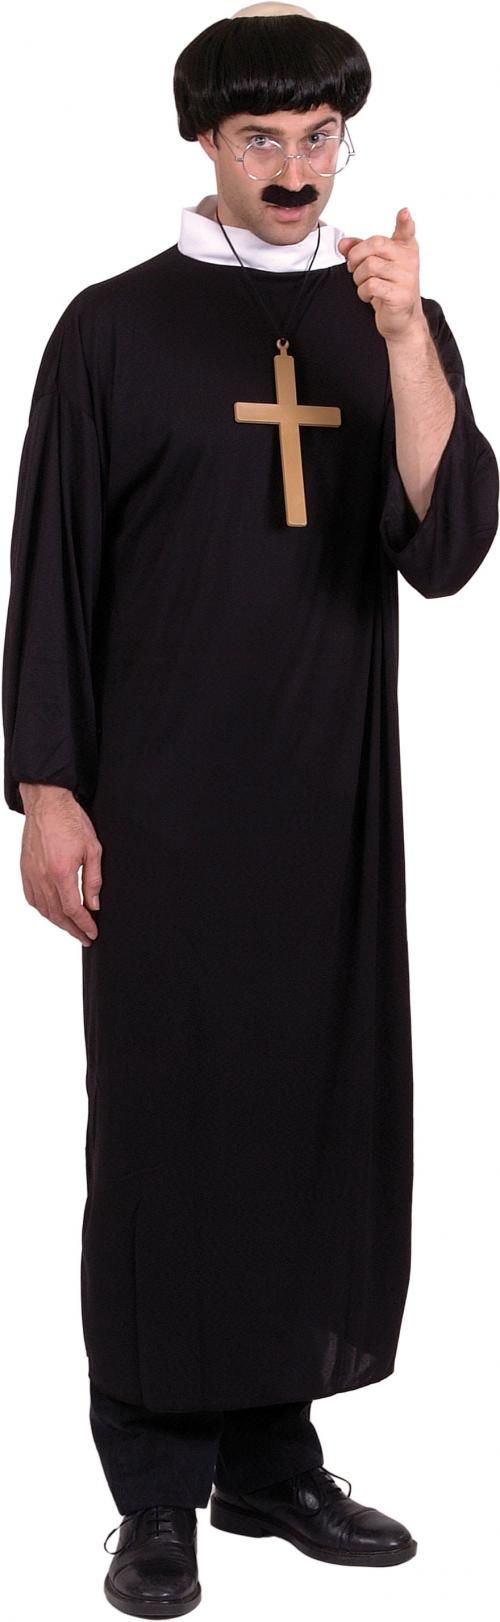 Pánský kostým, kněz - Velikost M 48-50